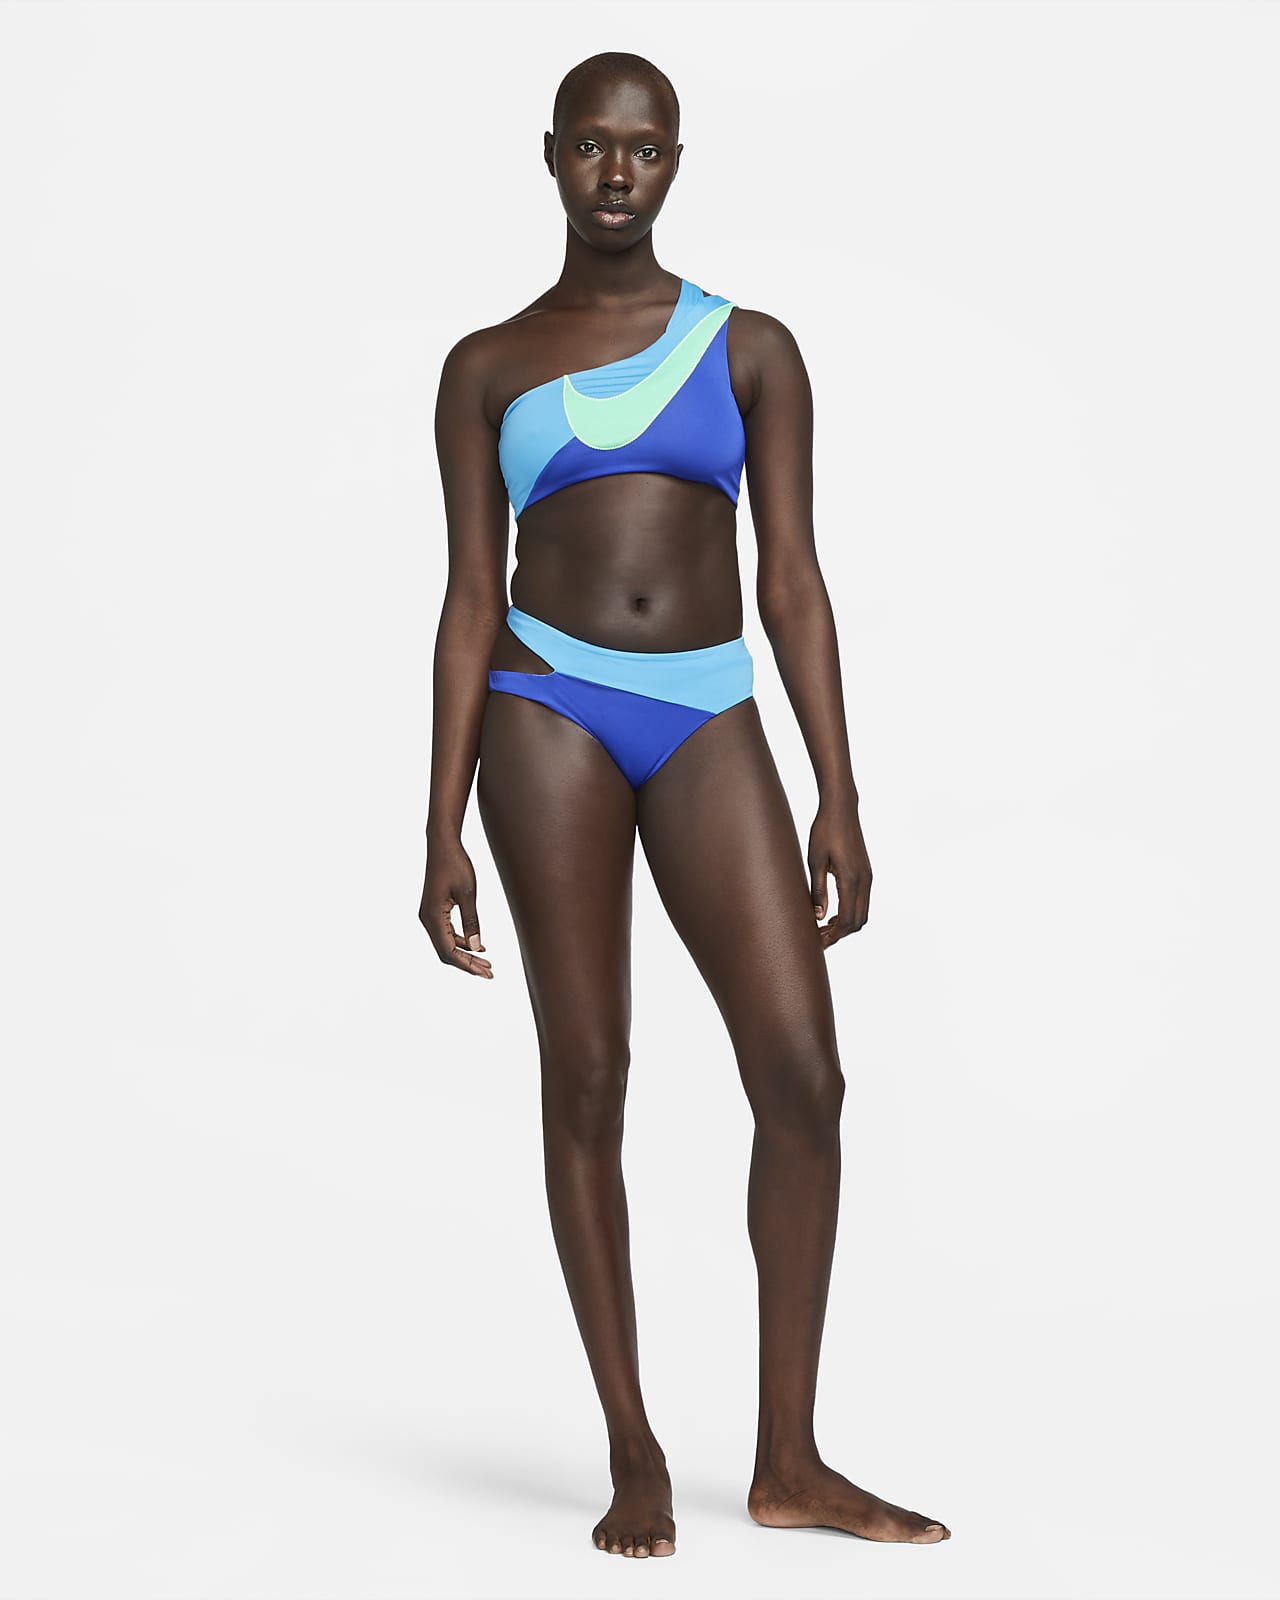 Nike Women's Bikini Bottoms